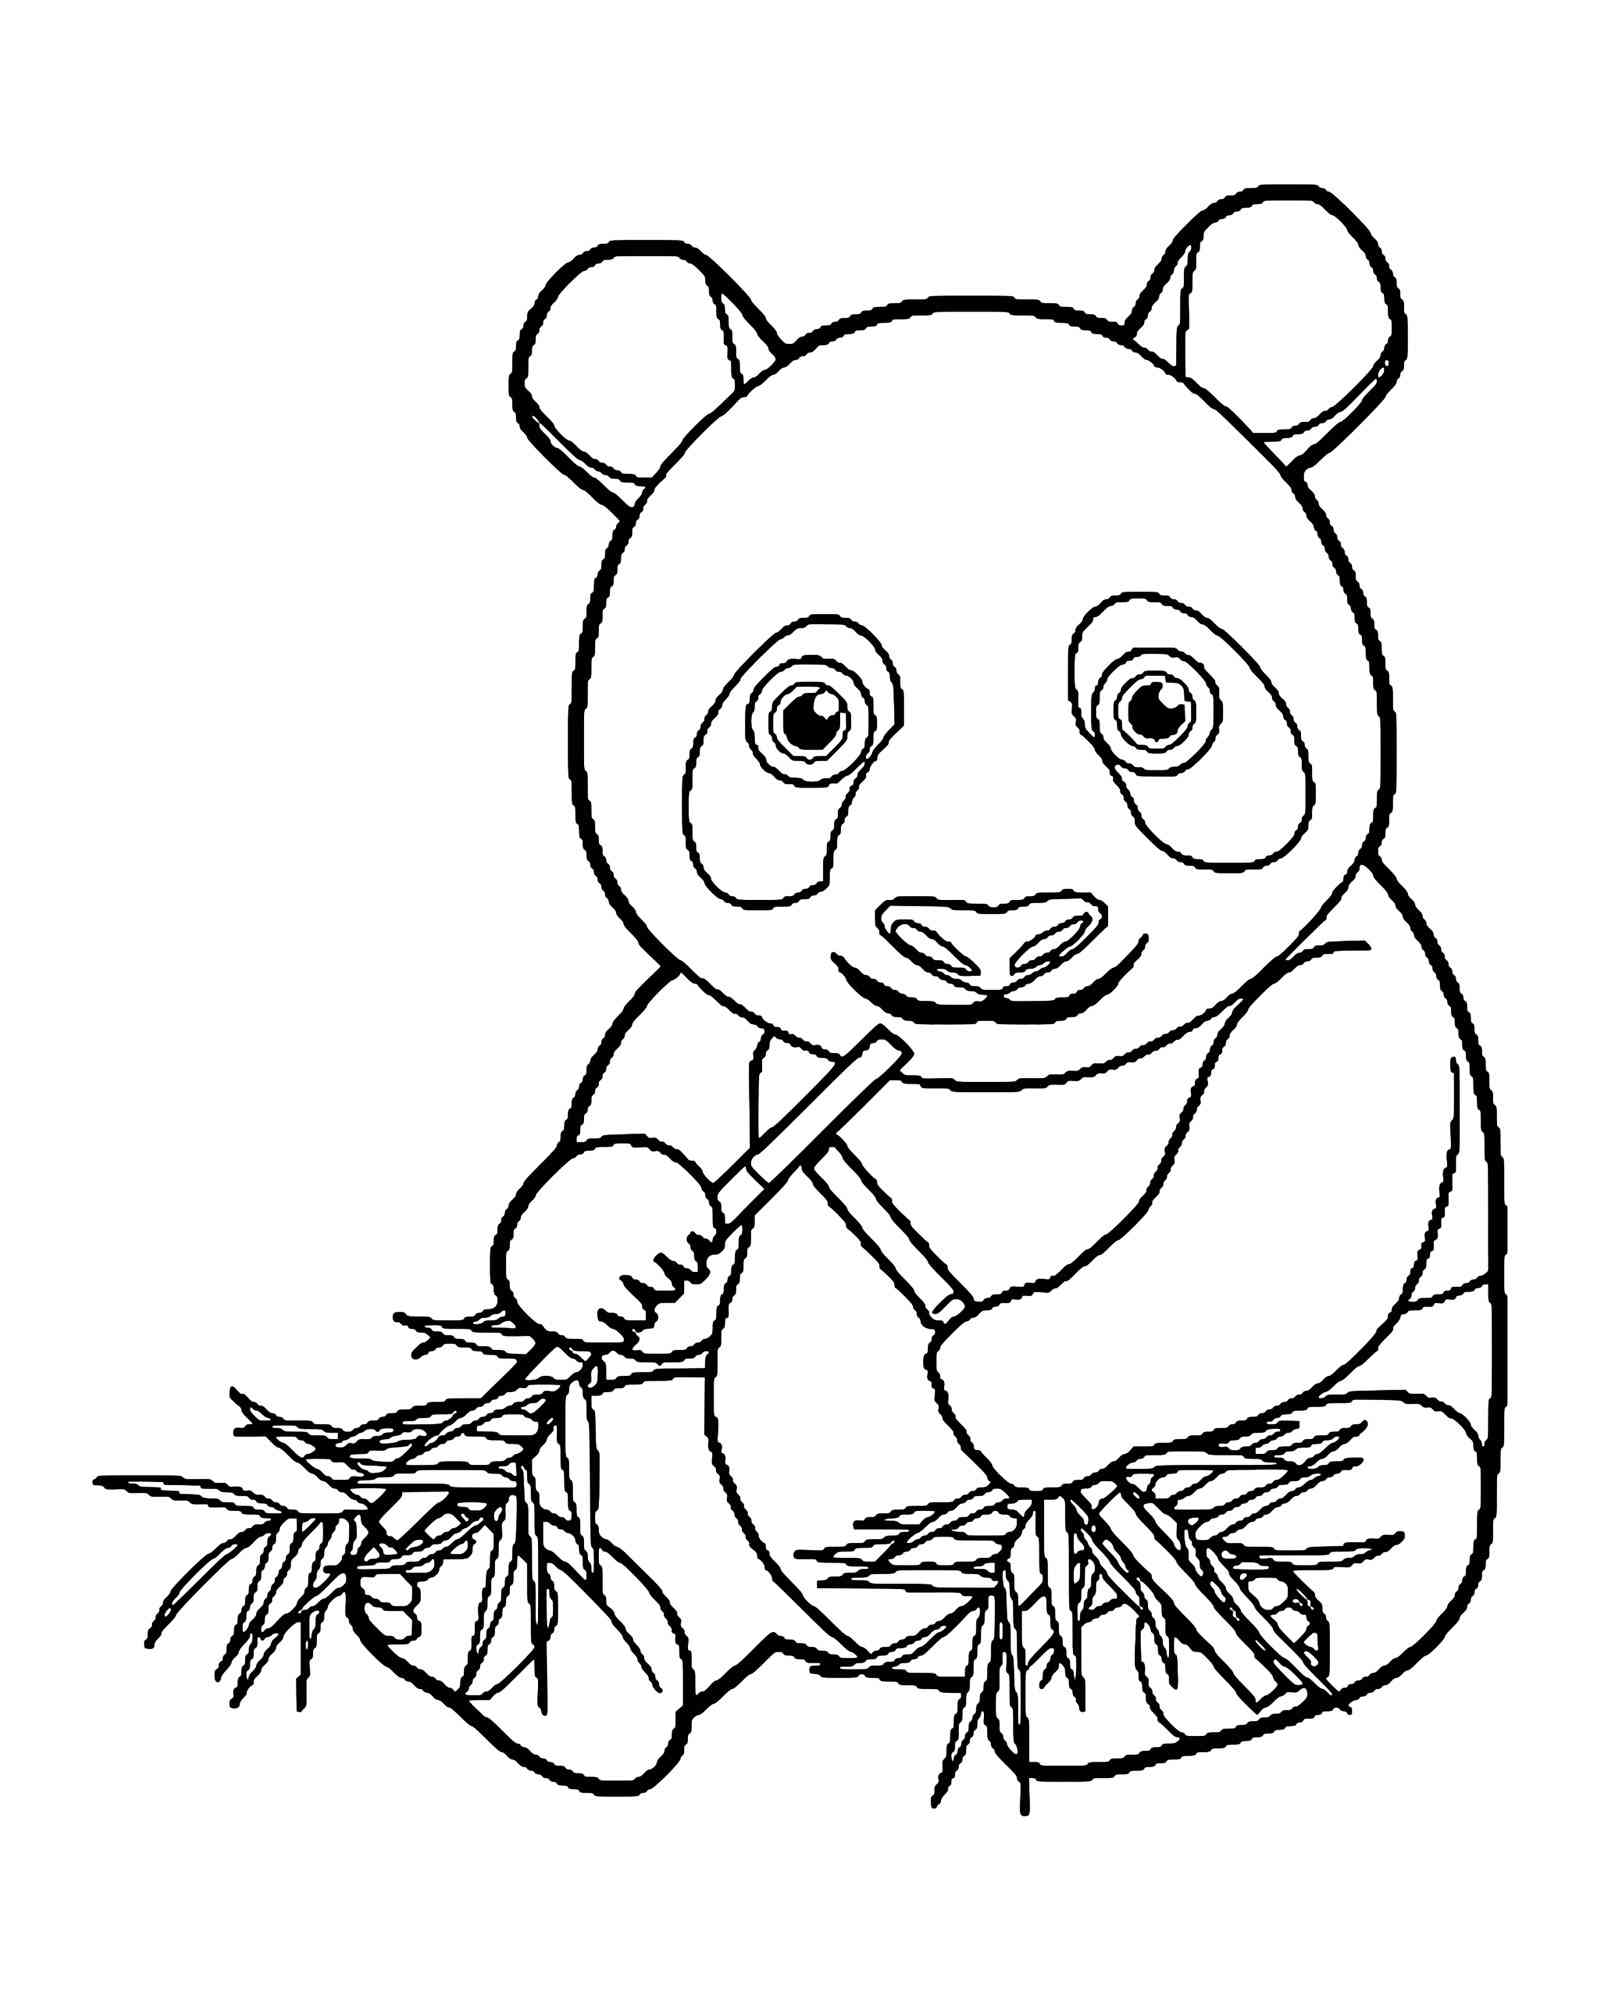 Panda Eating Bamboo coloring page